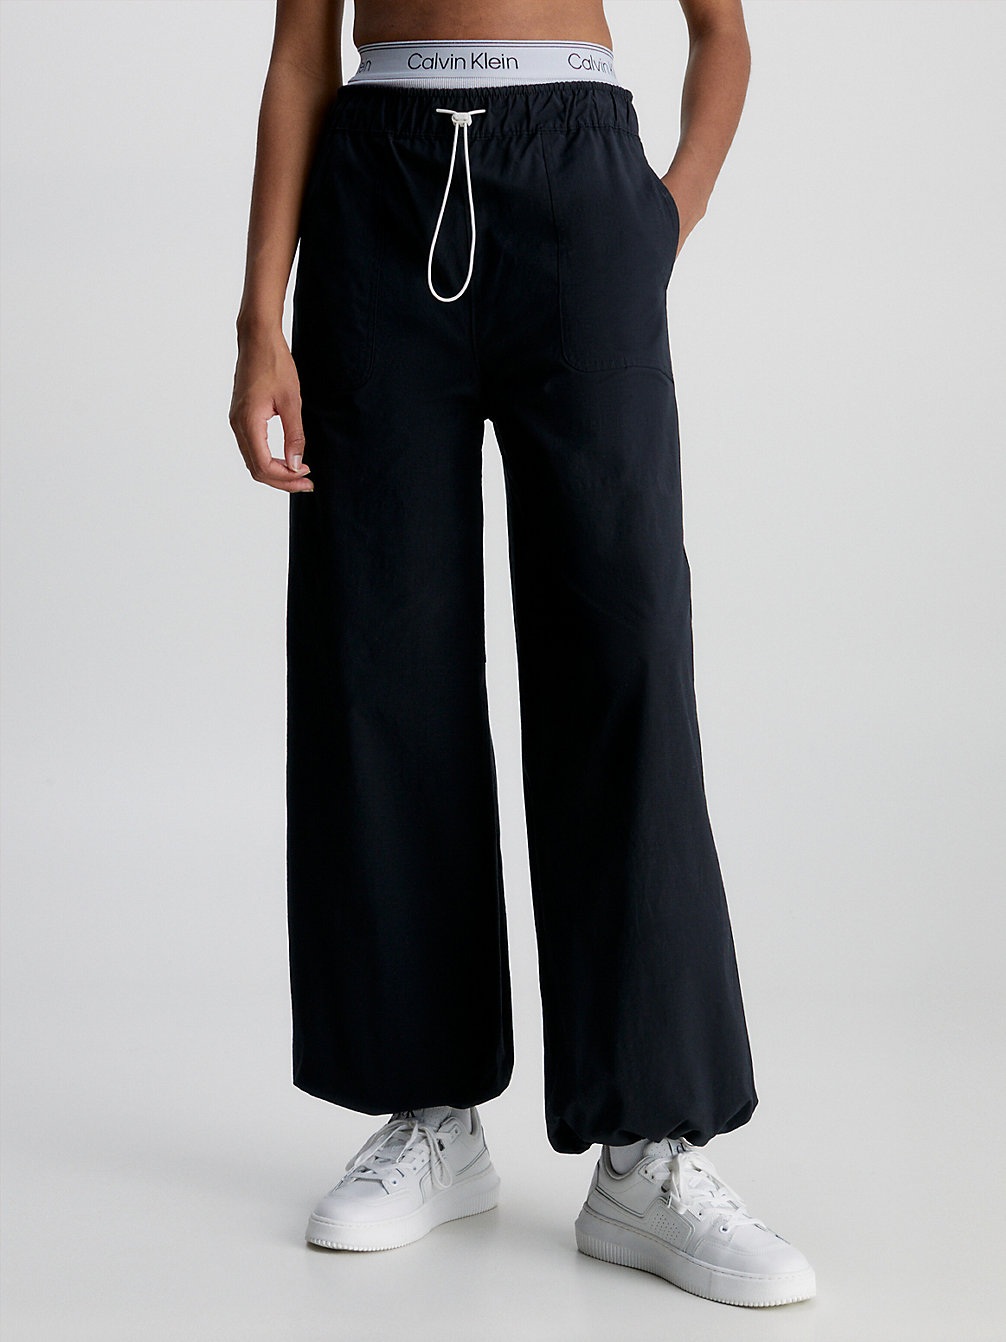 BLACK BEAUTY > Wasserabweisende Hose Mit Weitem Bein > undefined Damen - Calvin Klein